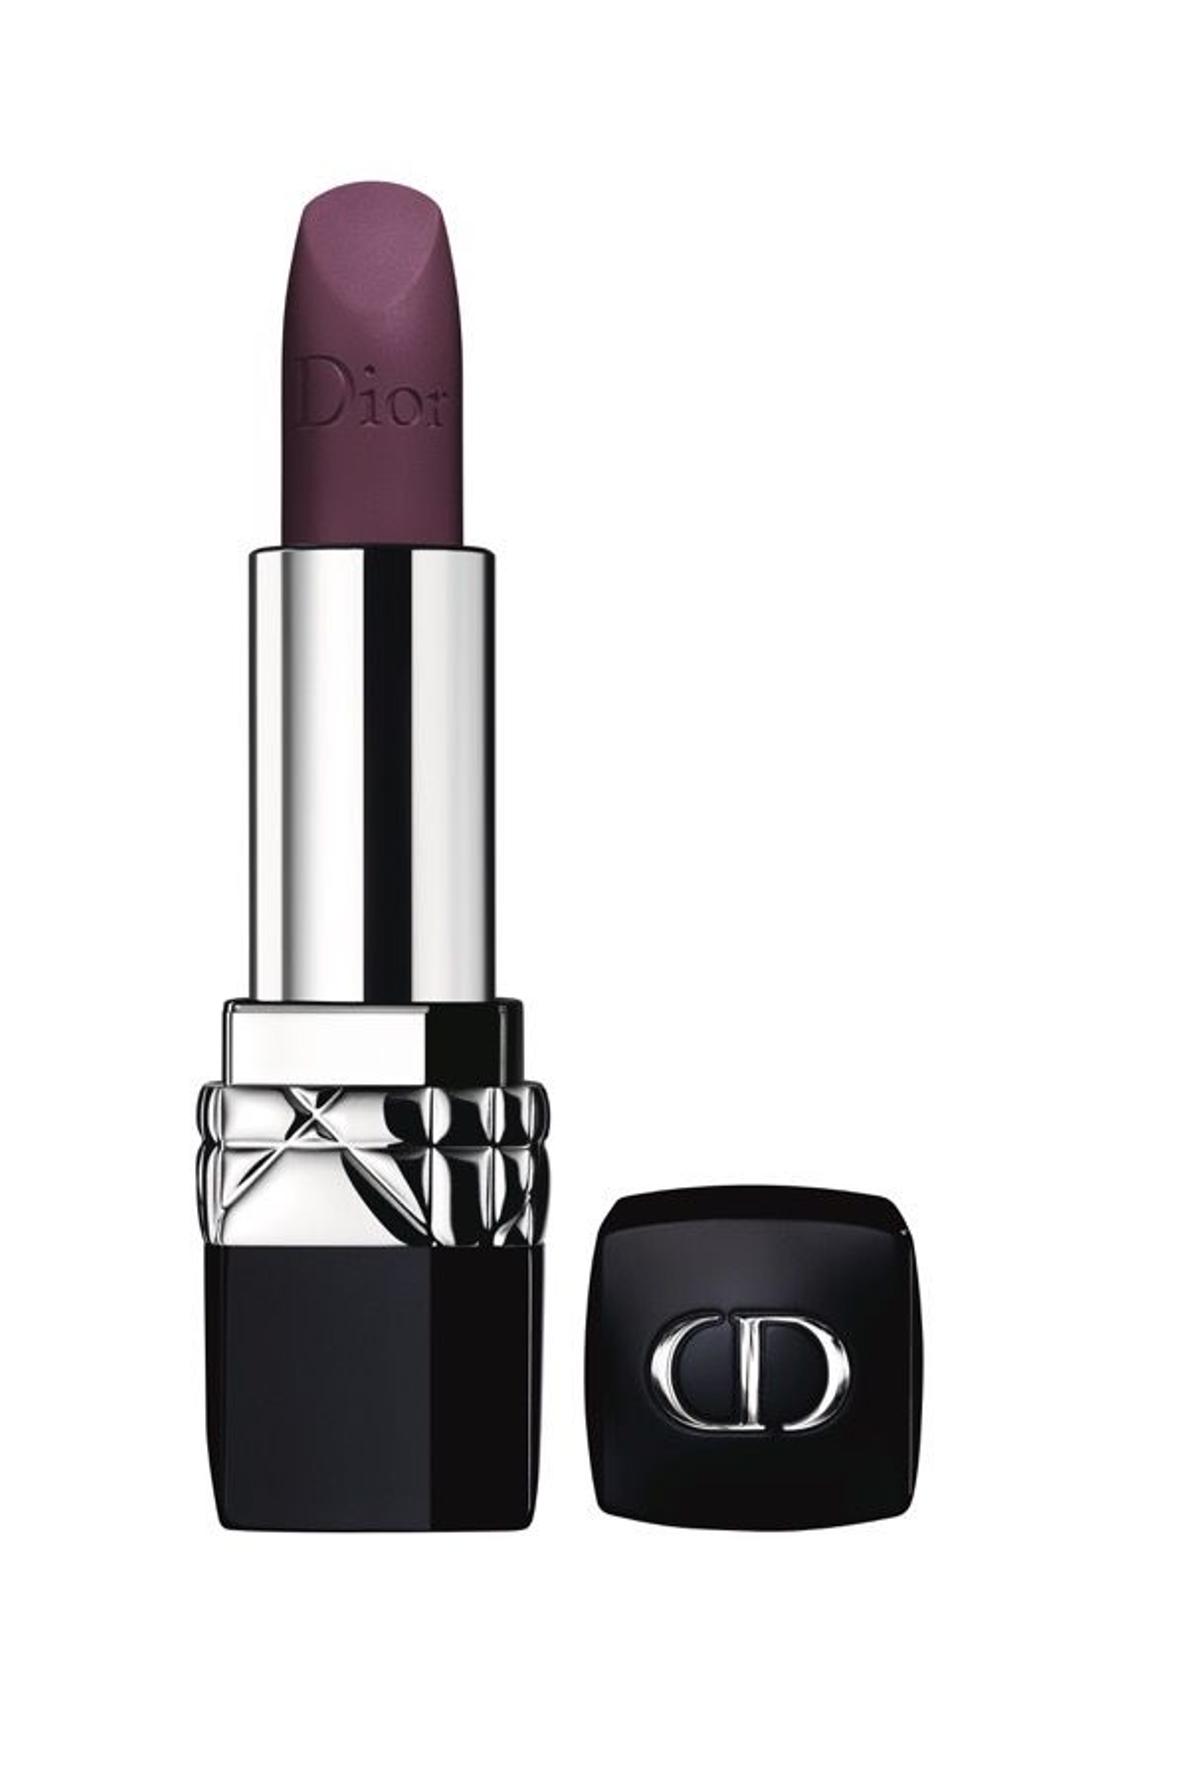 Los favoritos de Alex, Barra de labios Rouge Dior en tono 962